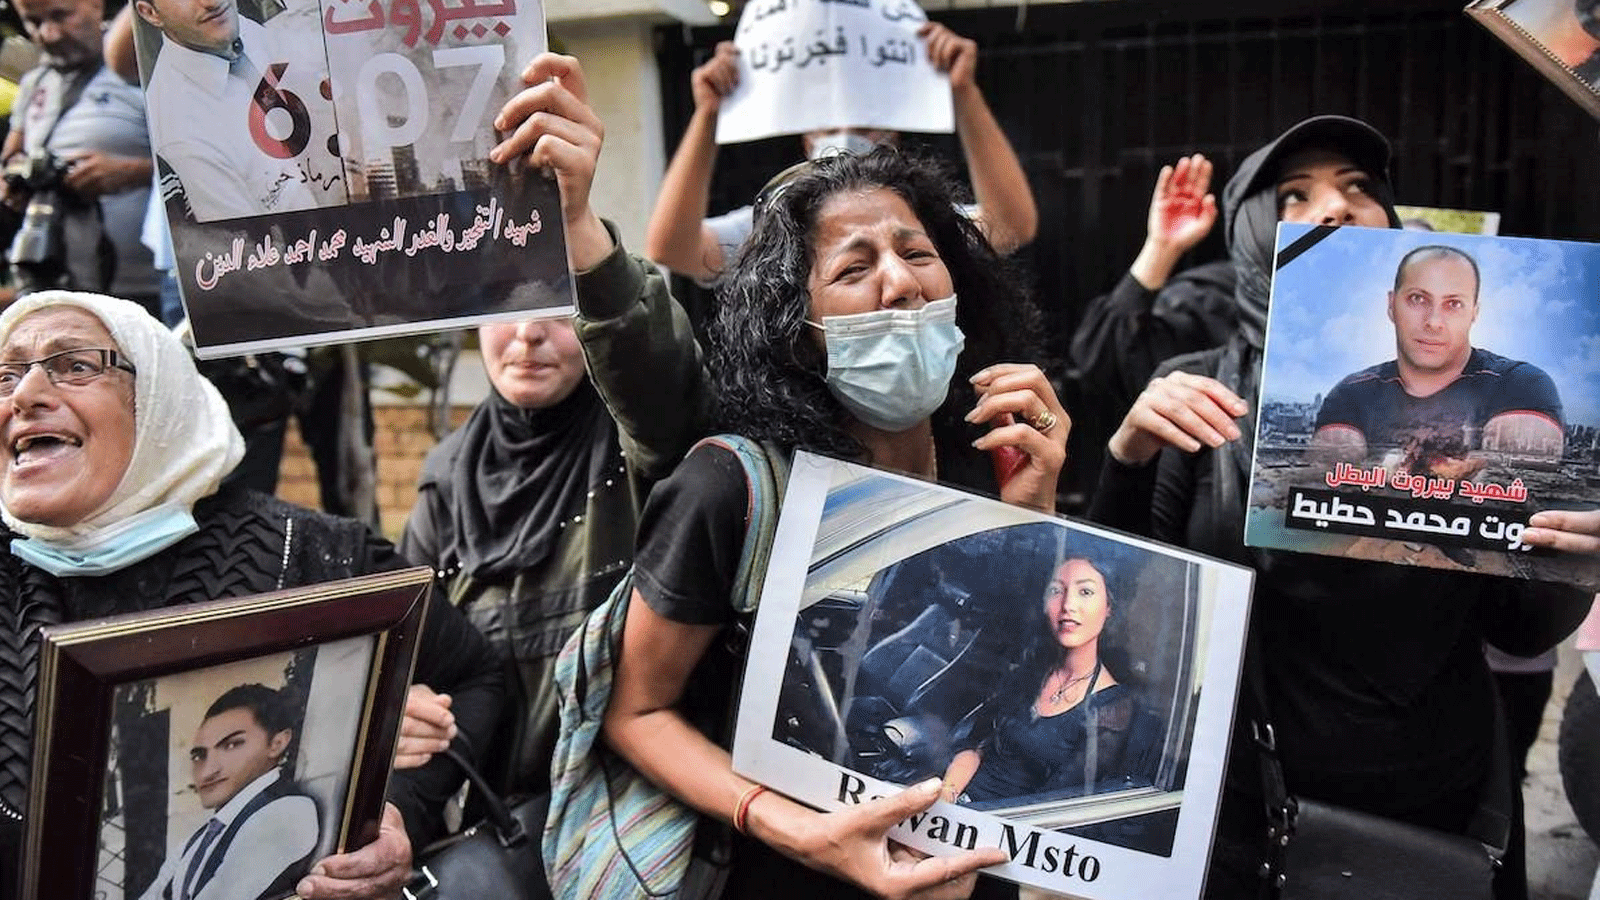 متظاهرون مع أهالي ضحايا الإنفجار في بيروت رددوا هتافات خلال مظاهرة خارج مقر إقامة وزير الداخلية اللبناني في قريطم غربي بيروت. بتاريخ 13 تموز/ يوليو 2021